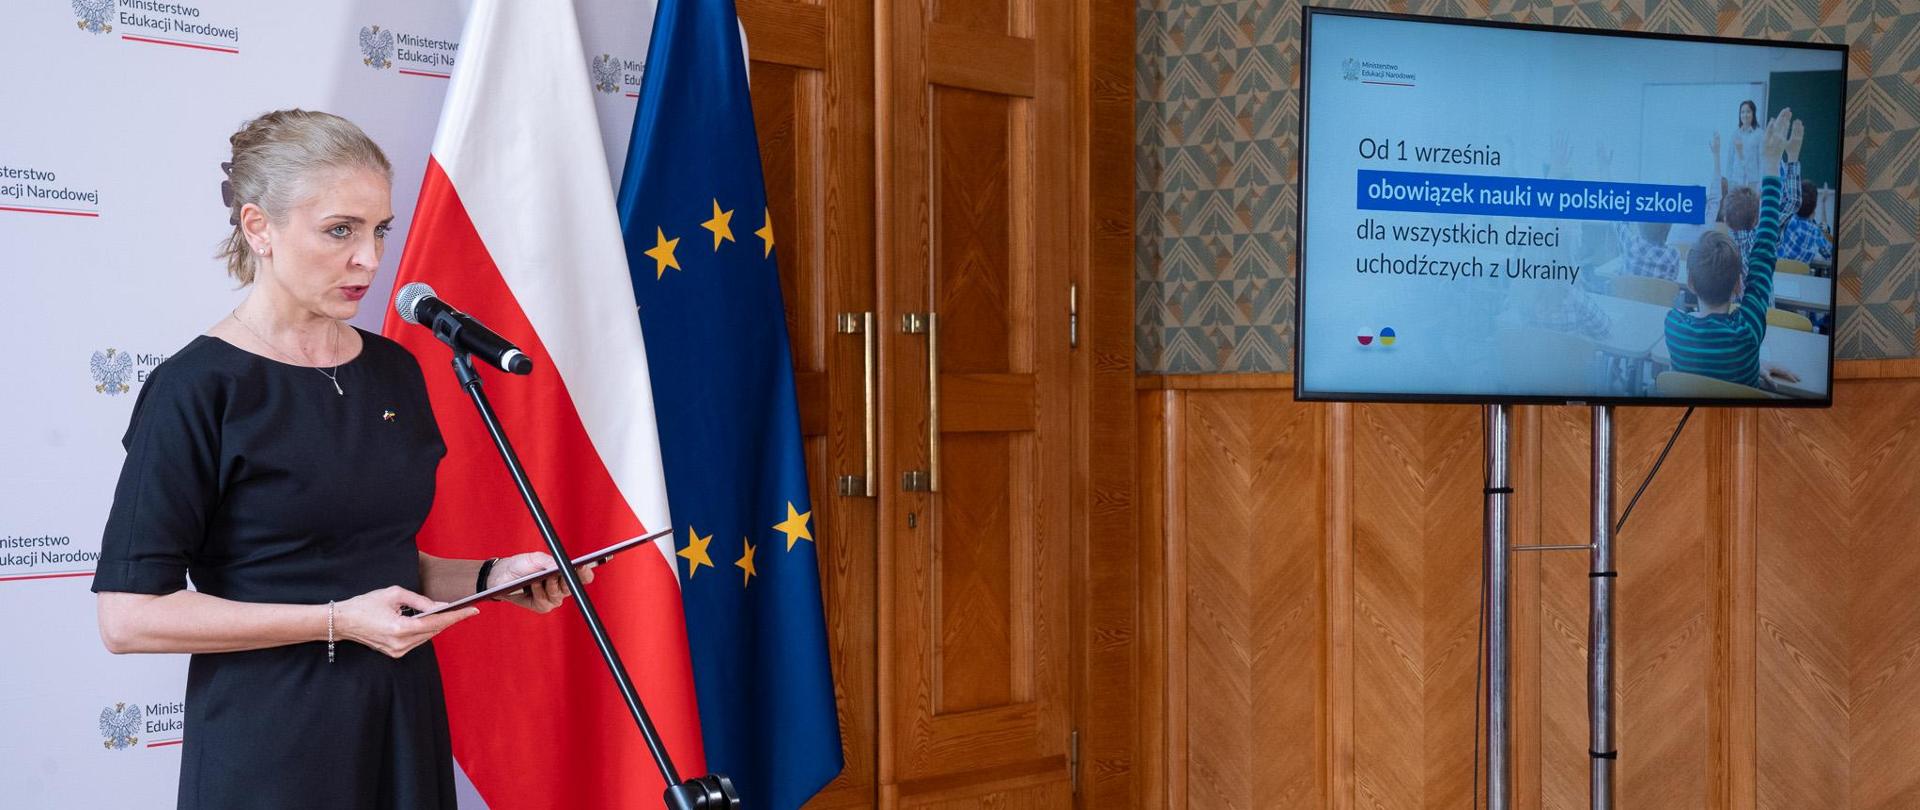 Na tle białej ścianki z napisami Ministerstwo Edukacji Narodowej oraz flag Polski i UE stoi przed ustawionym na statywie mikrofonie wiceminister Joanna Mucha. W ręku trzyma bordową teczkę. Po prawej stronie na statywie ustawiony monitor na którym wyświetlana jest prezentacja. 